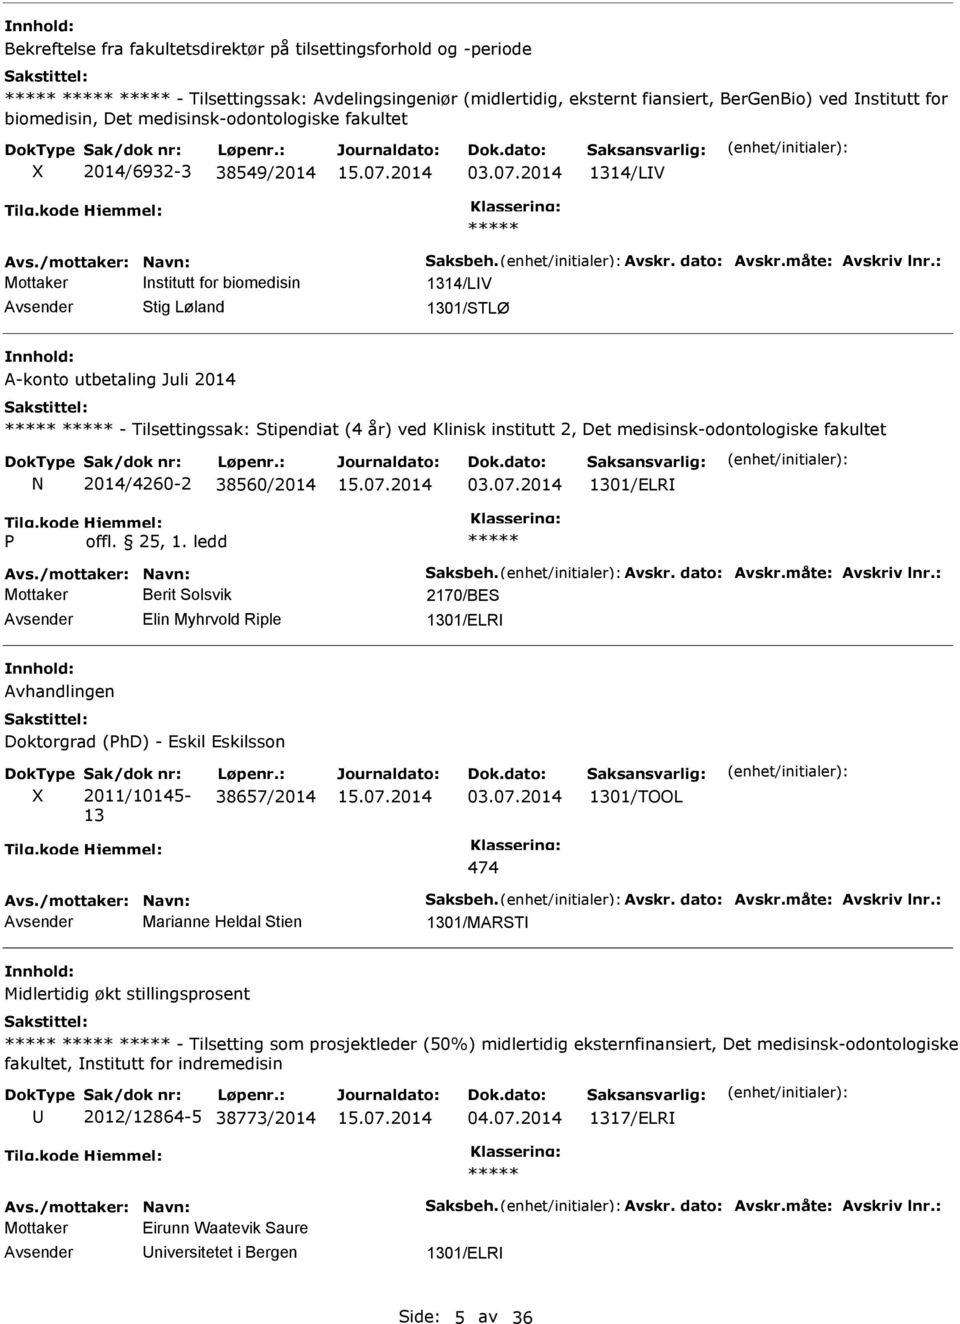 2014 1314/LV Mottaker nstitutt for biomedisin 1314/LV Stig Løland 1301/STLØ A-konto utbetaling Juli 2014 - Tilsettingssak: Stipendiat (4 år) ved Klinisk institutt 2, Det N 2014/4260-2 38560/2014 03.